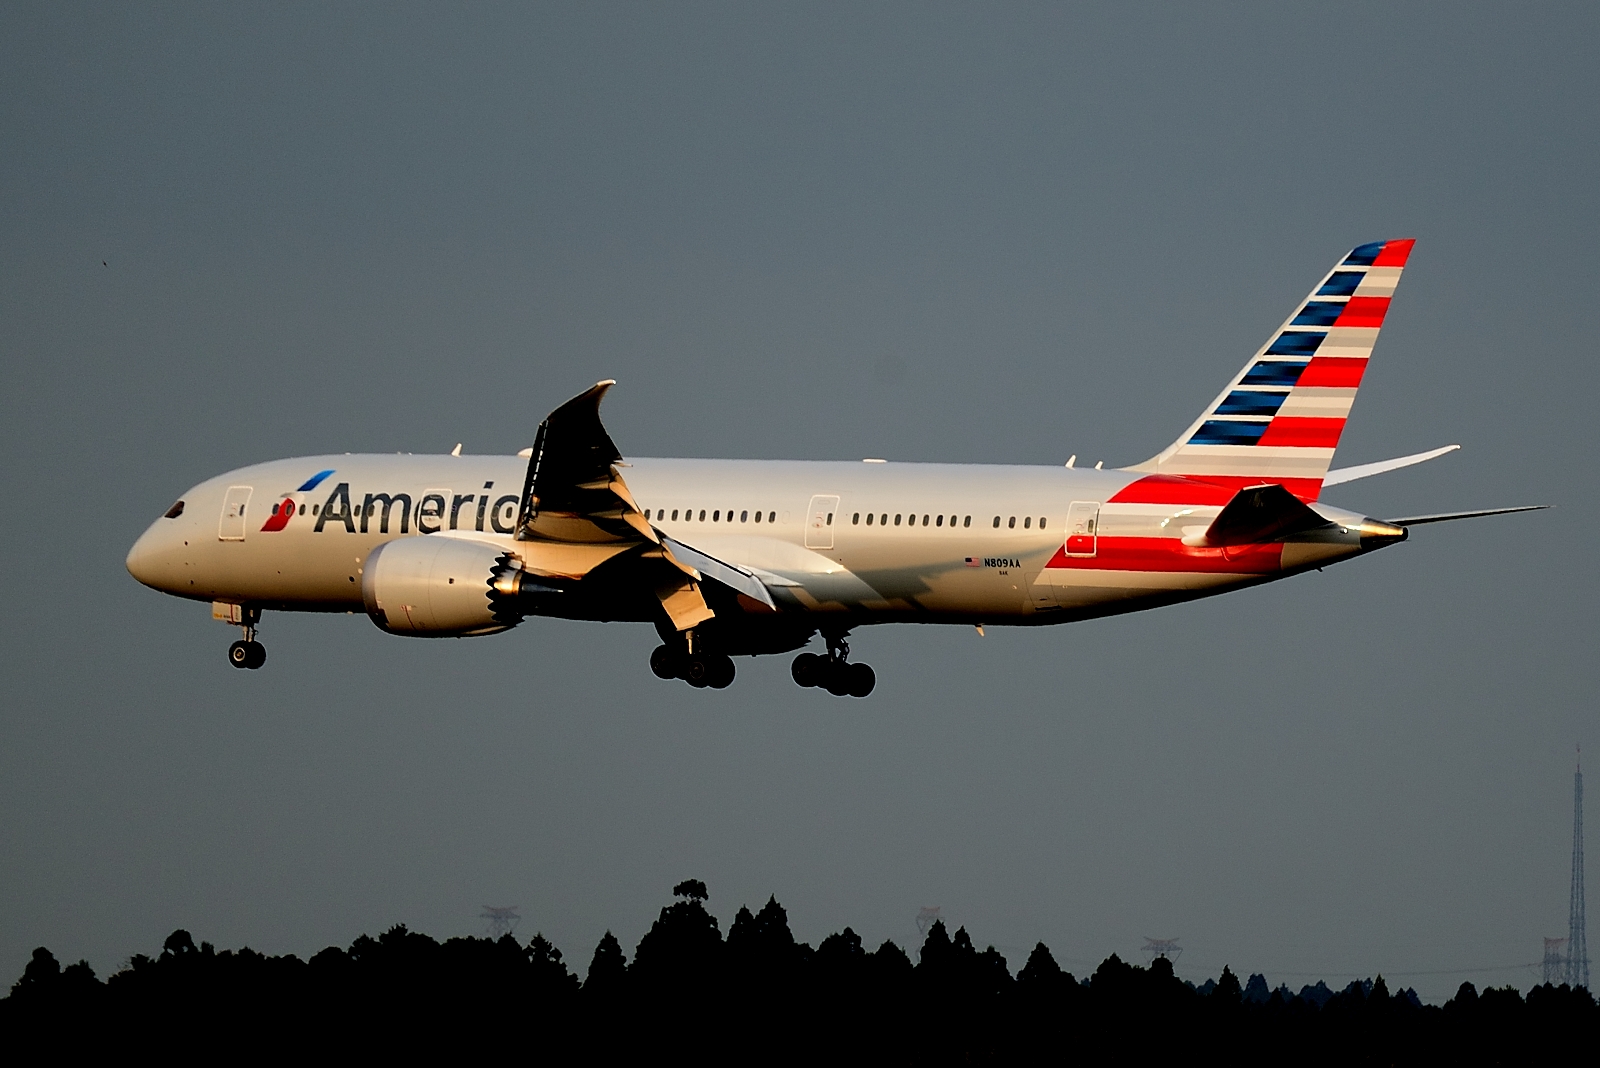 American Airlines sviluppa la tecnologia Smart Gating per ridurre i tempi di avvicinamento al gate degli aeromobili in arrivo